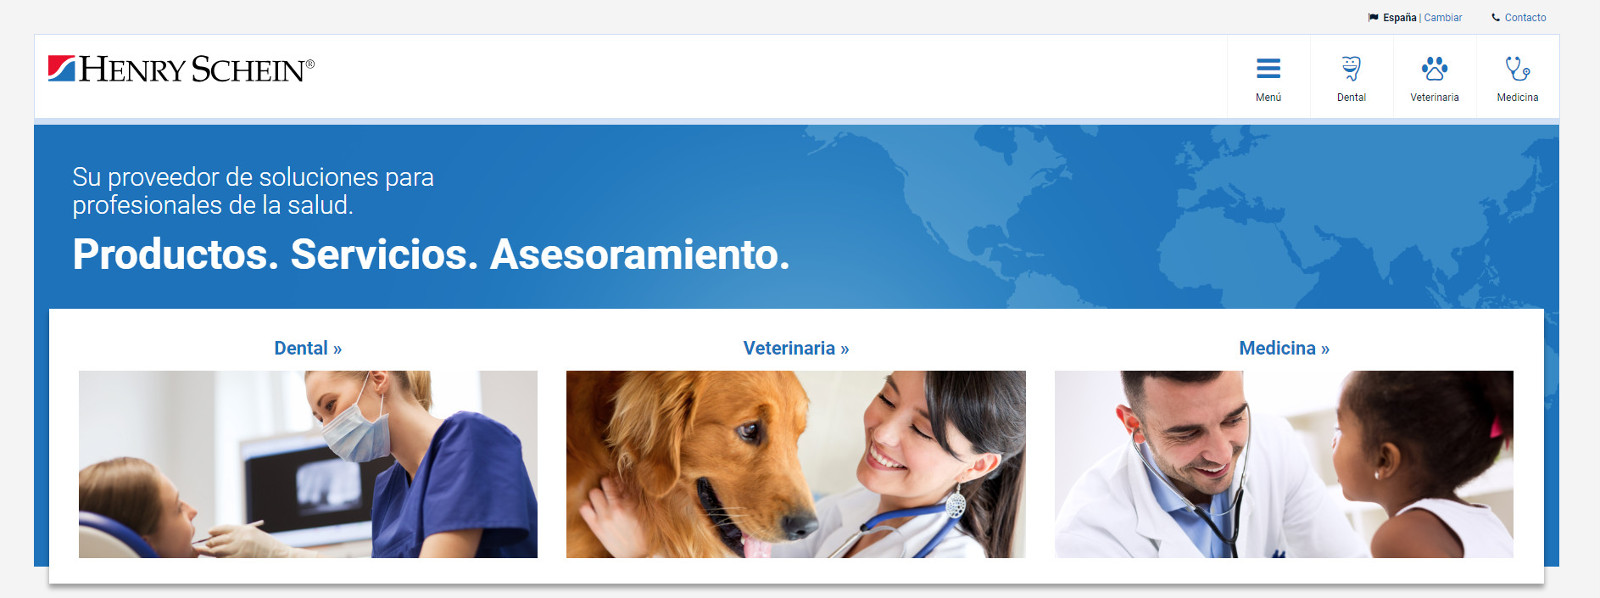 Henry Schein España ha lanzado un nuevo sitio web para mejorar la experiencia del cliente